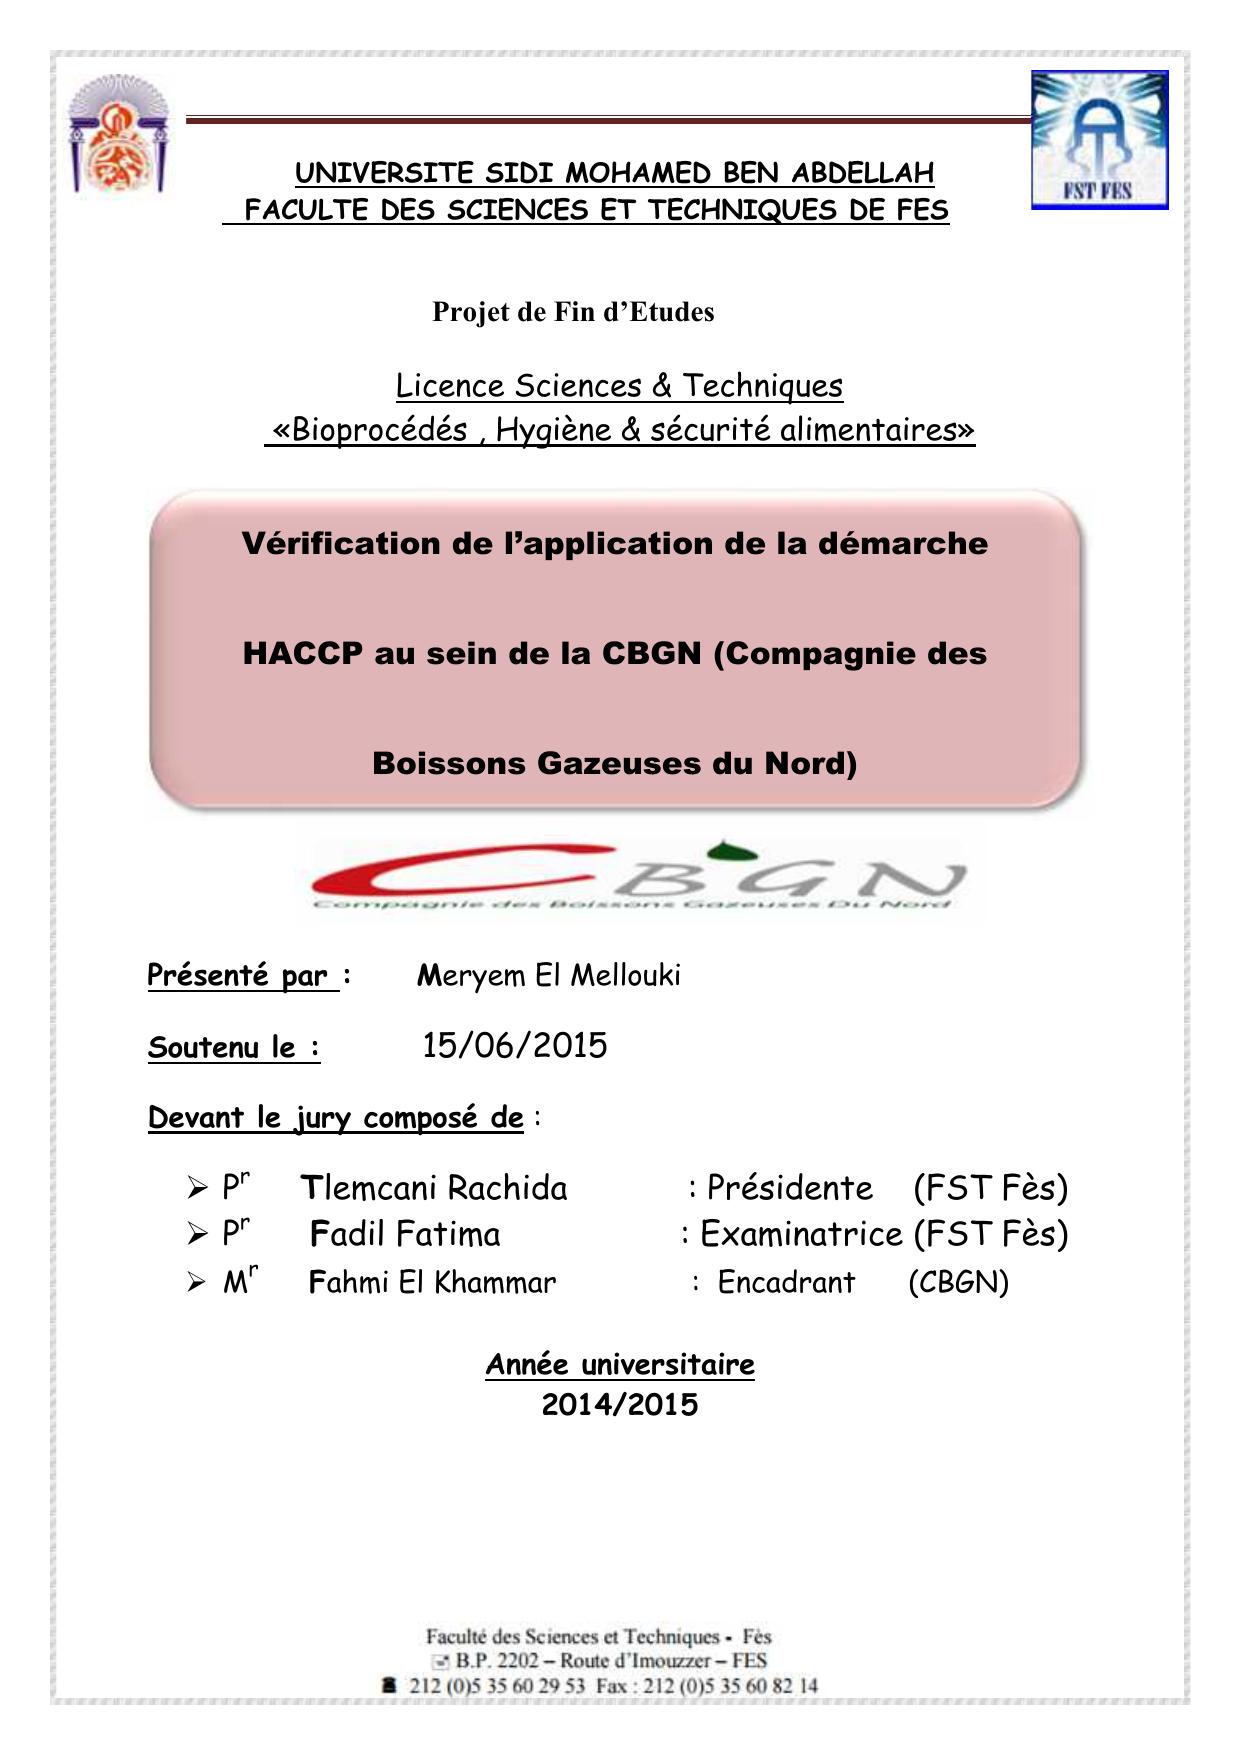 Vérification de l’application de la démarche HACCP au sein de la CBGN (Compagnie des Boissons Gazeuses du Nord)